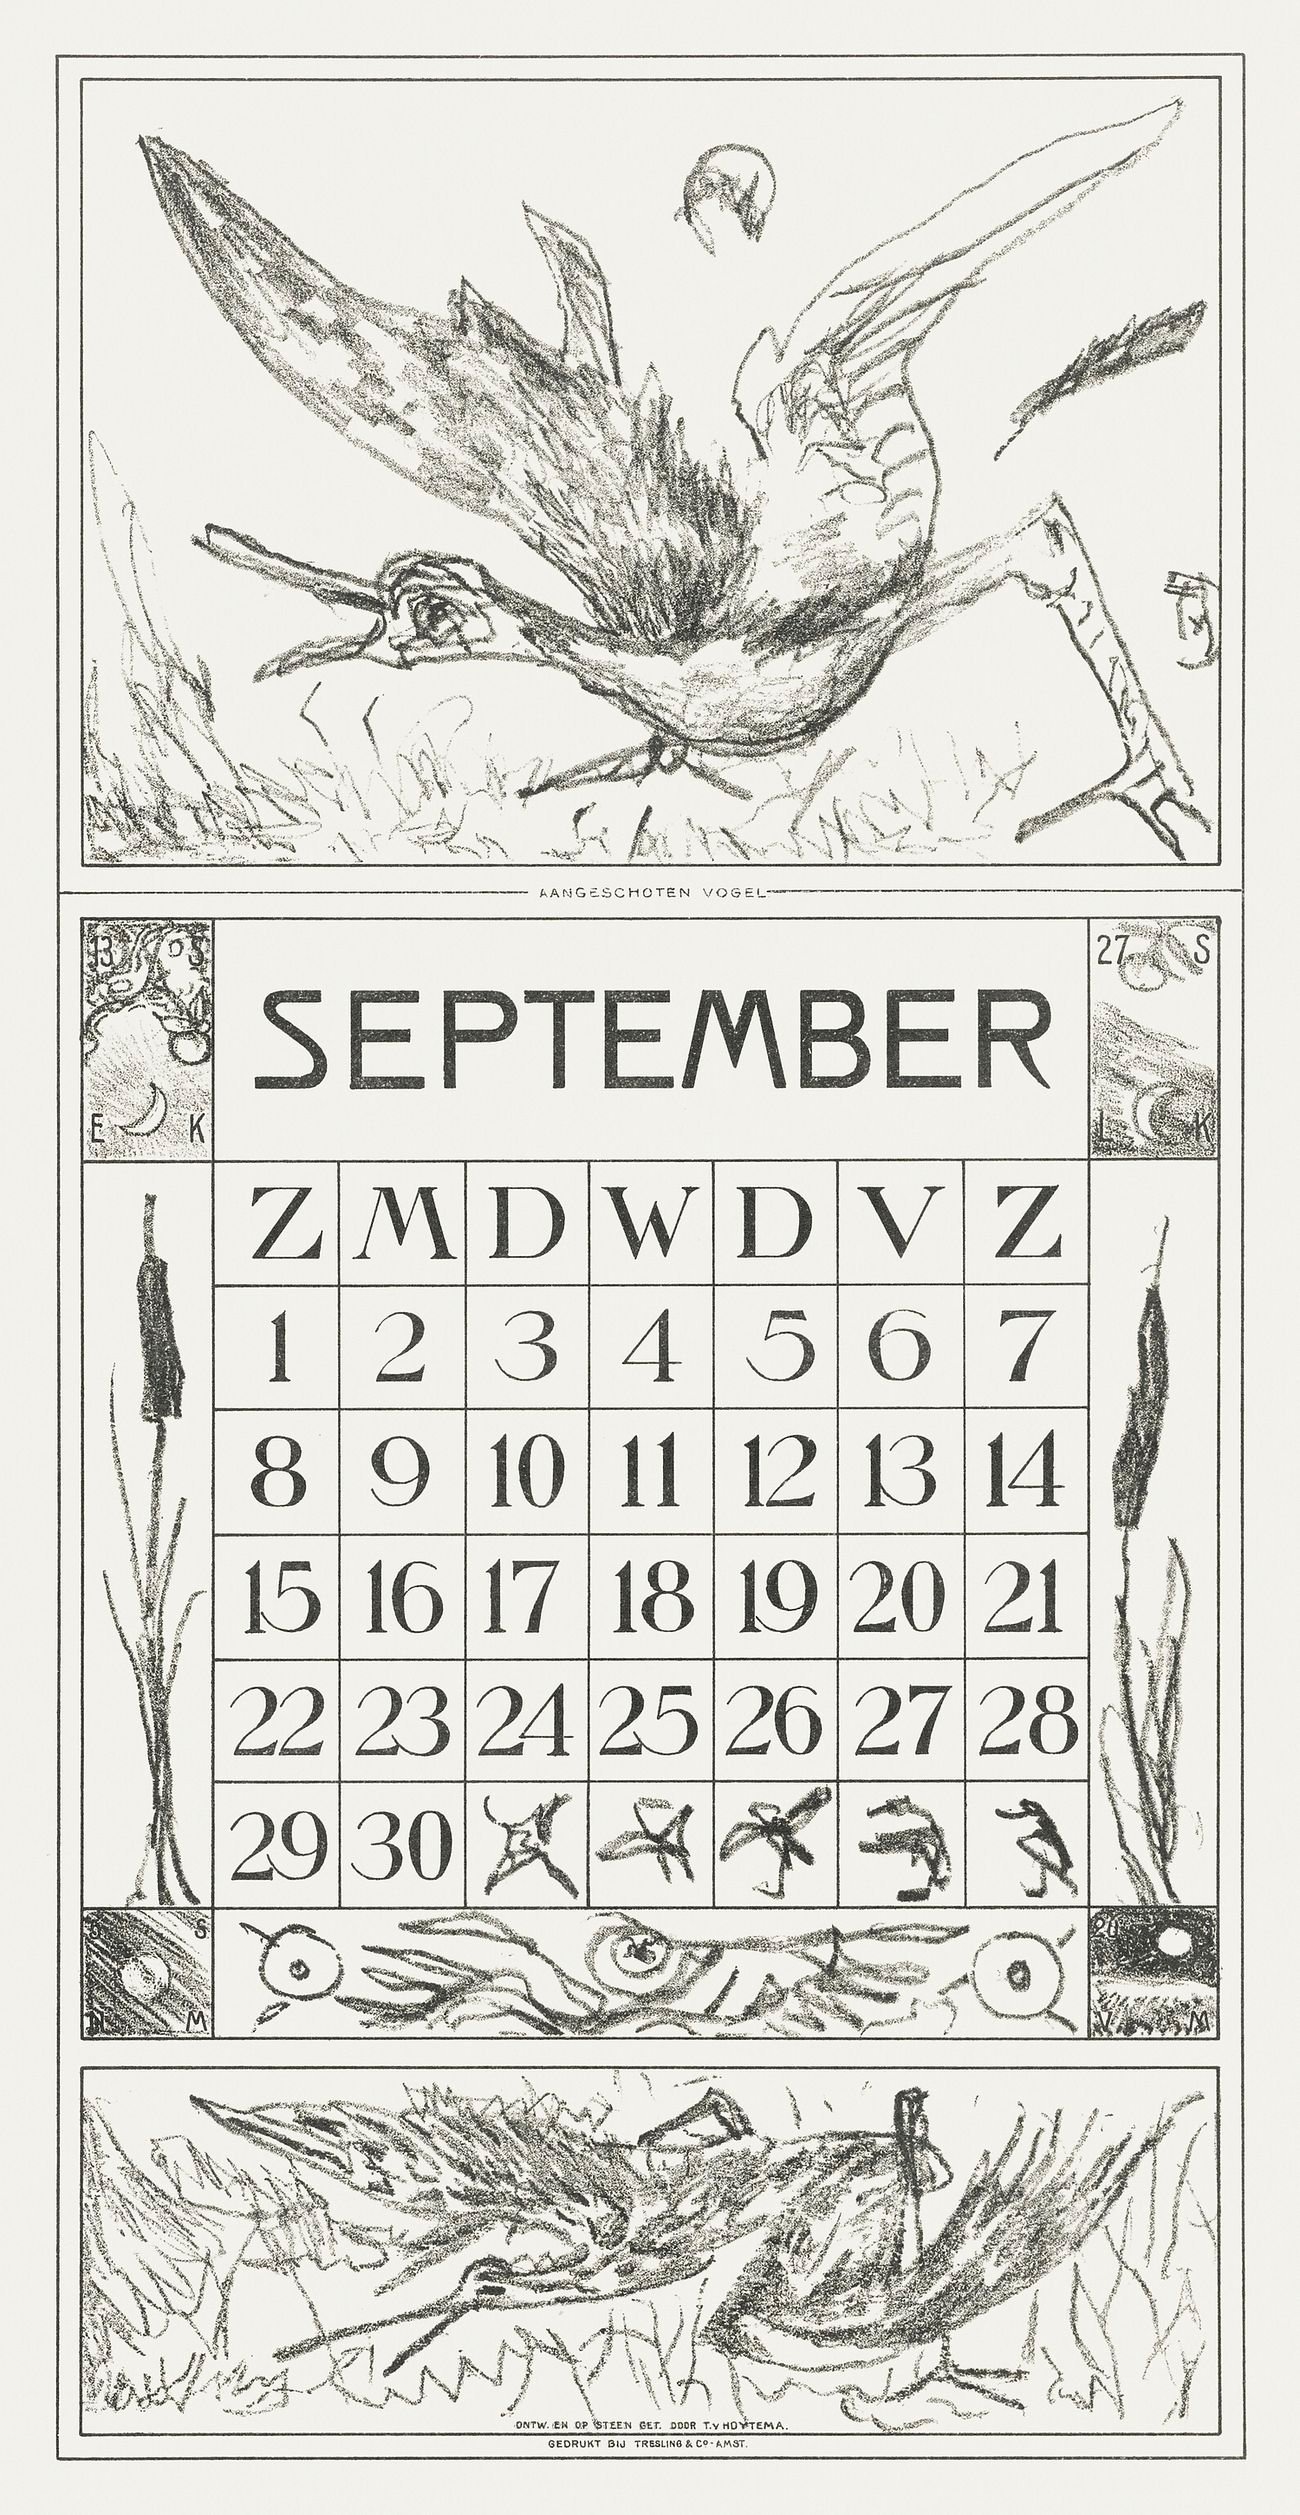 Kalenderblad september met aangeschoten vogel